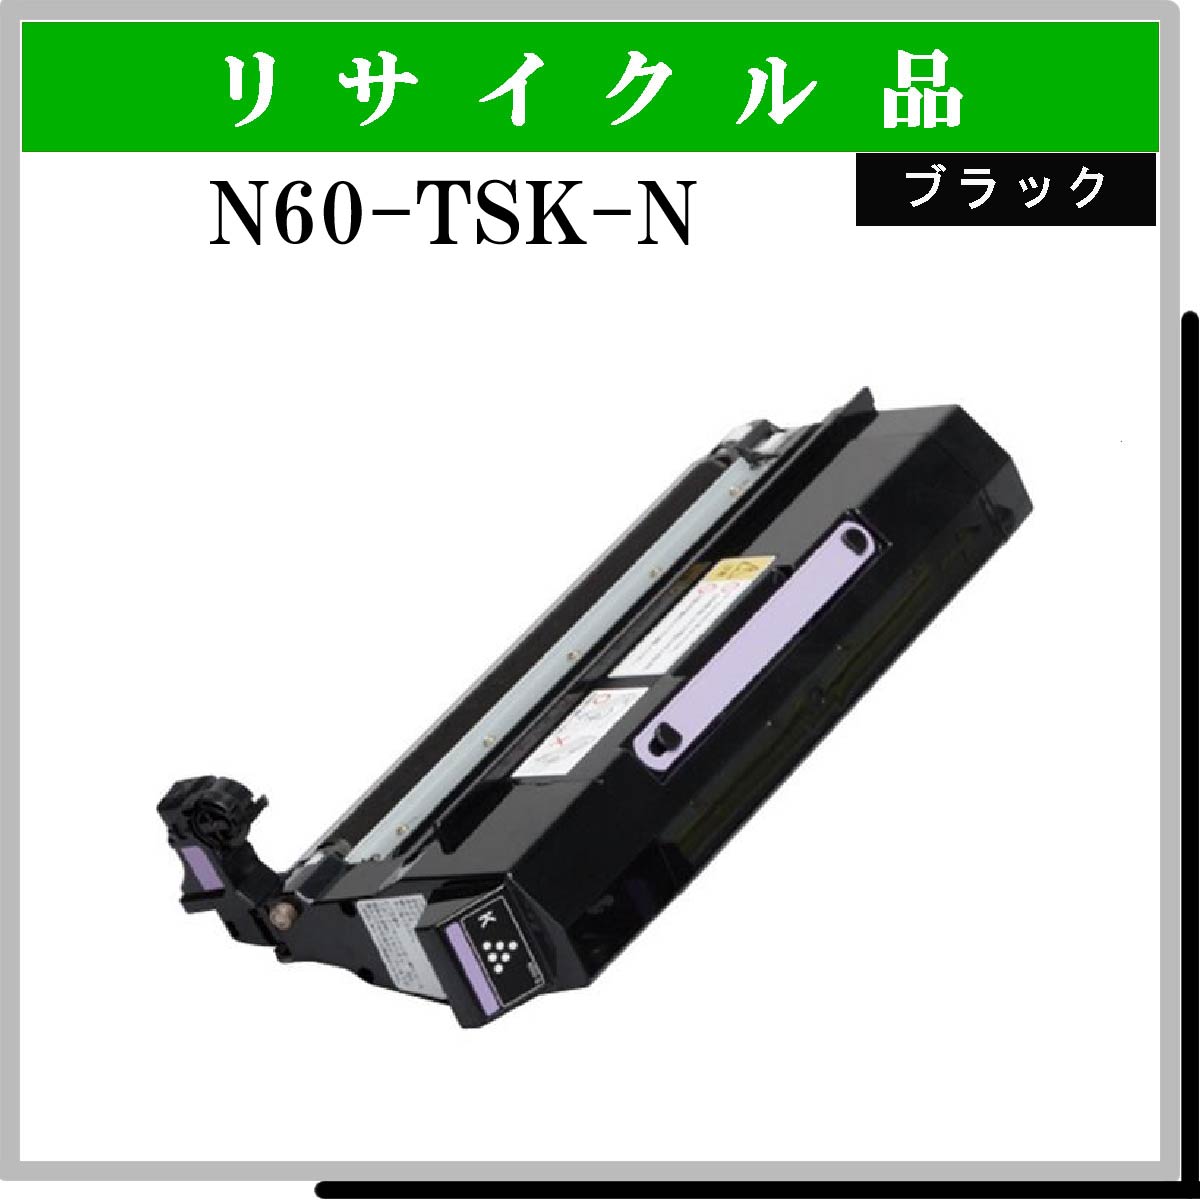 N60-TSK-N